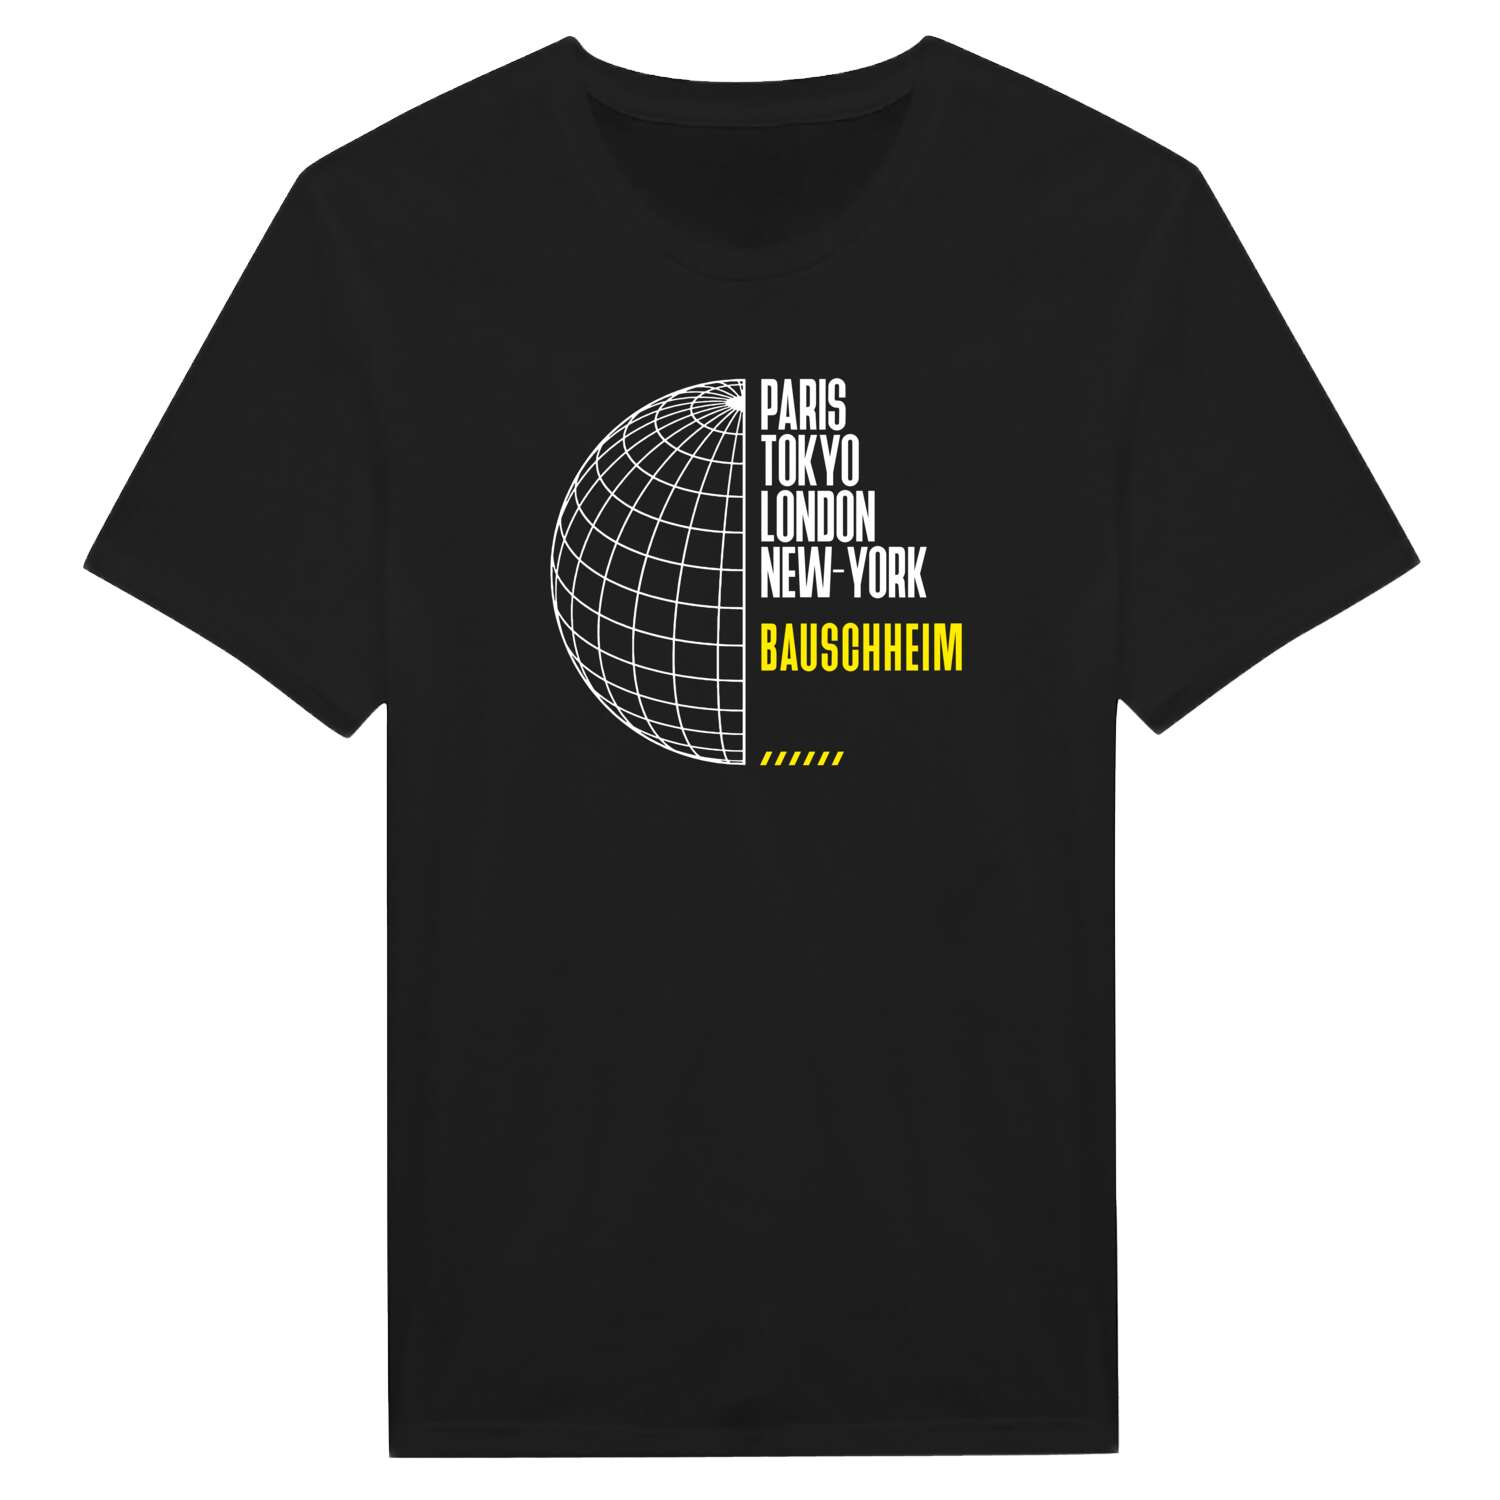 Bauschheim T-Shirt »Paris Tokyo London«